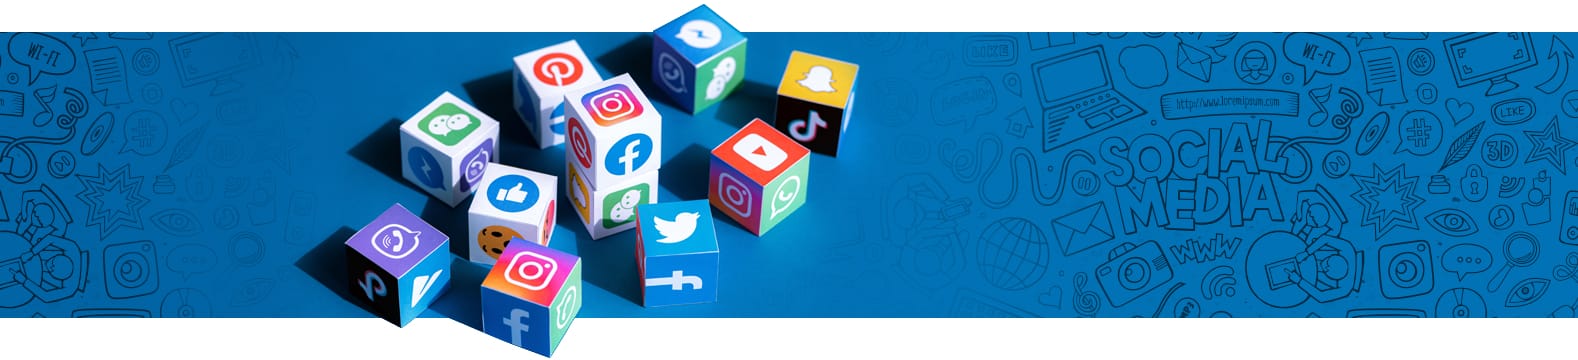 Sosyal Medya Kullanımı Avantajları Nelerdir?